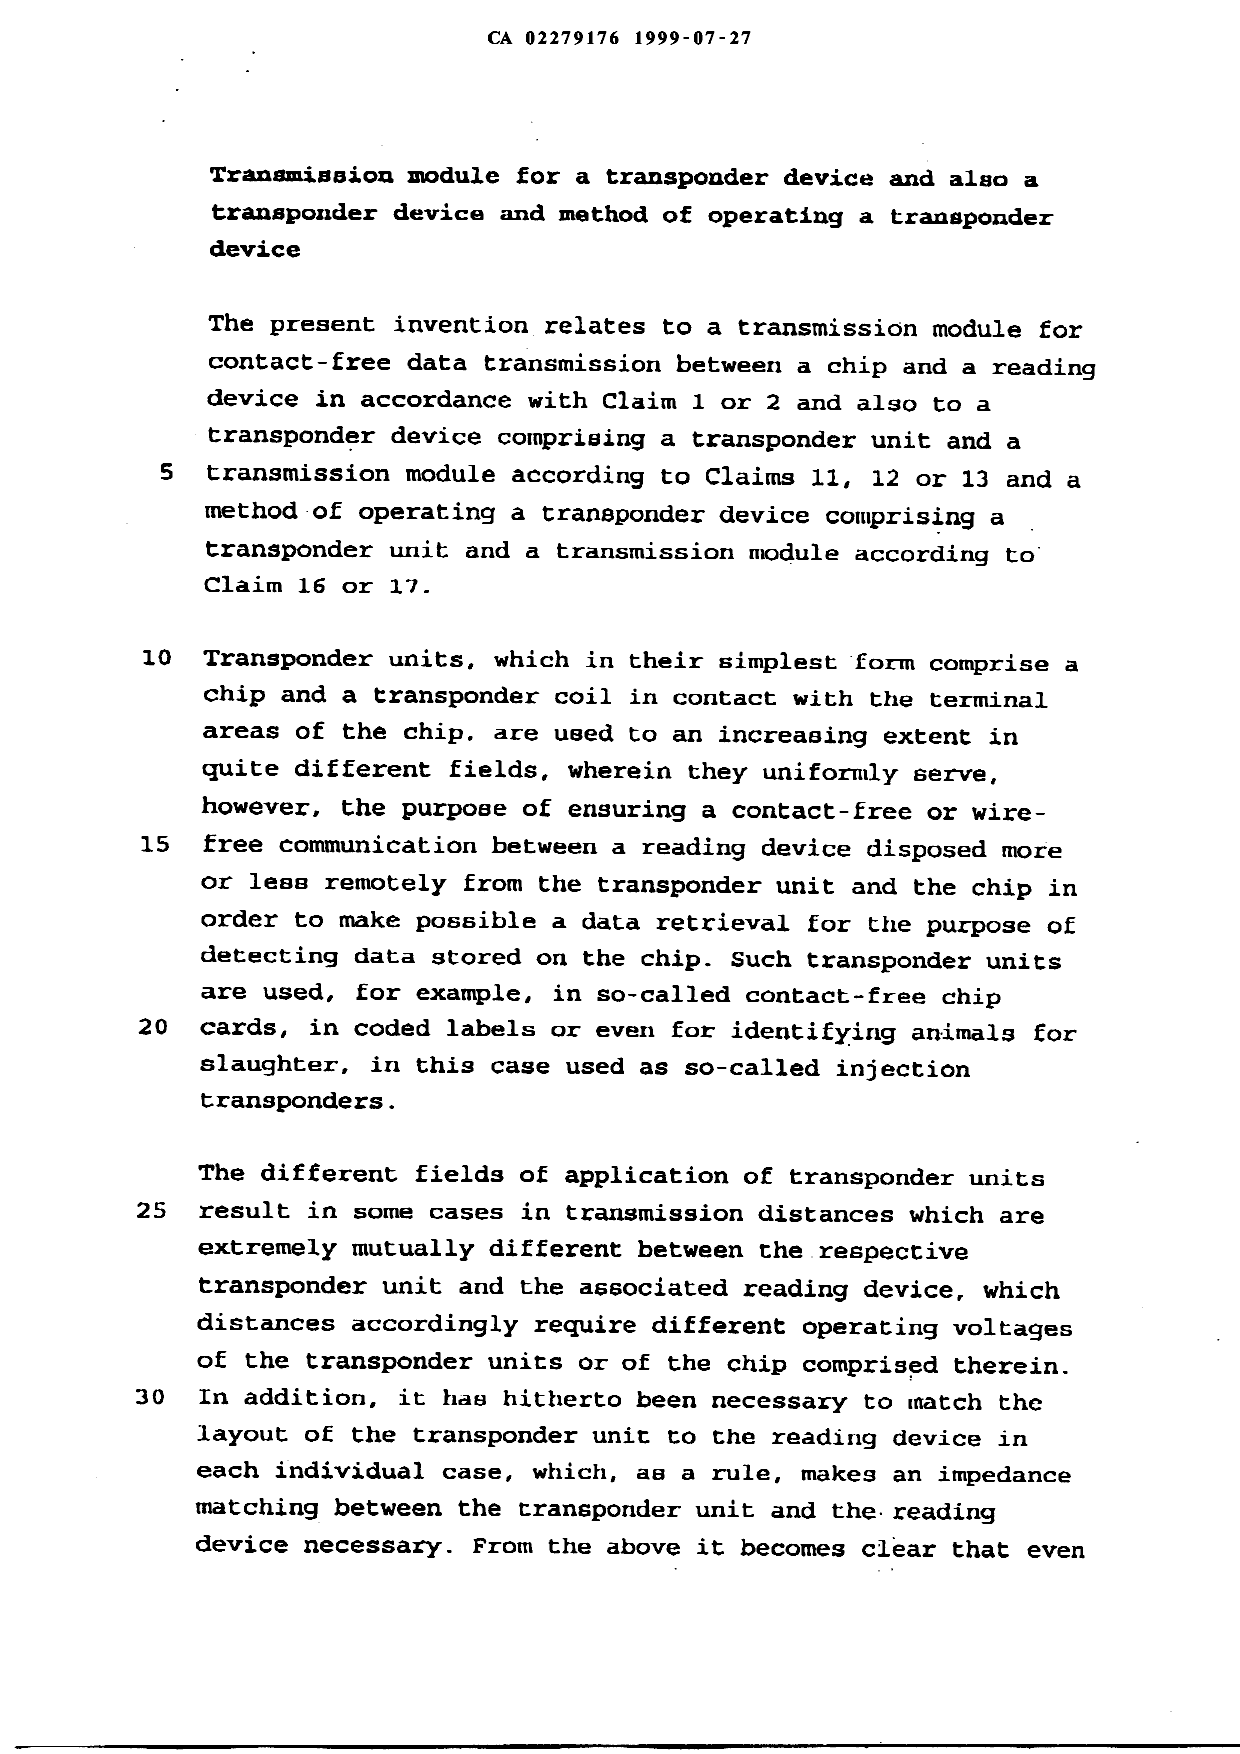 Canadian Patent Document 2279176. Description 19990727. Image 1 of 13